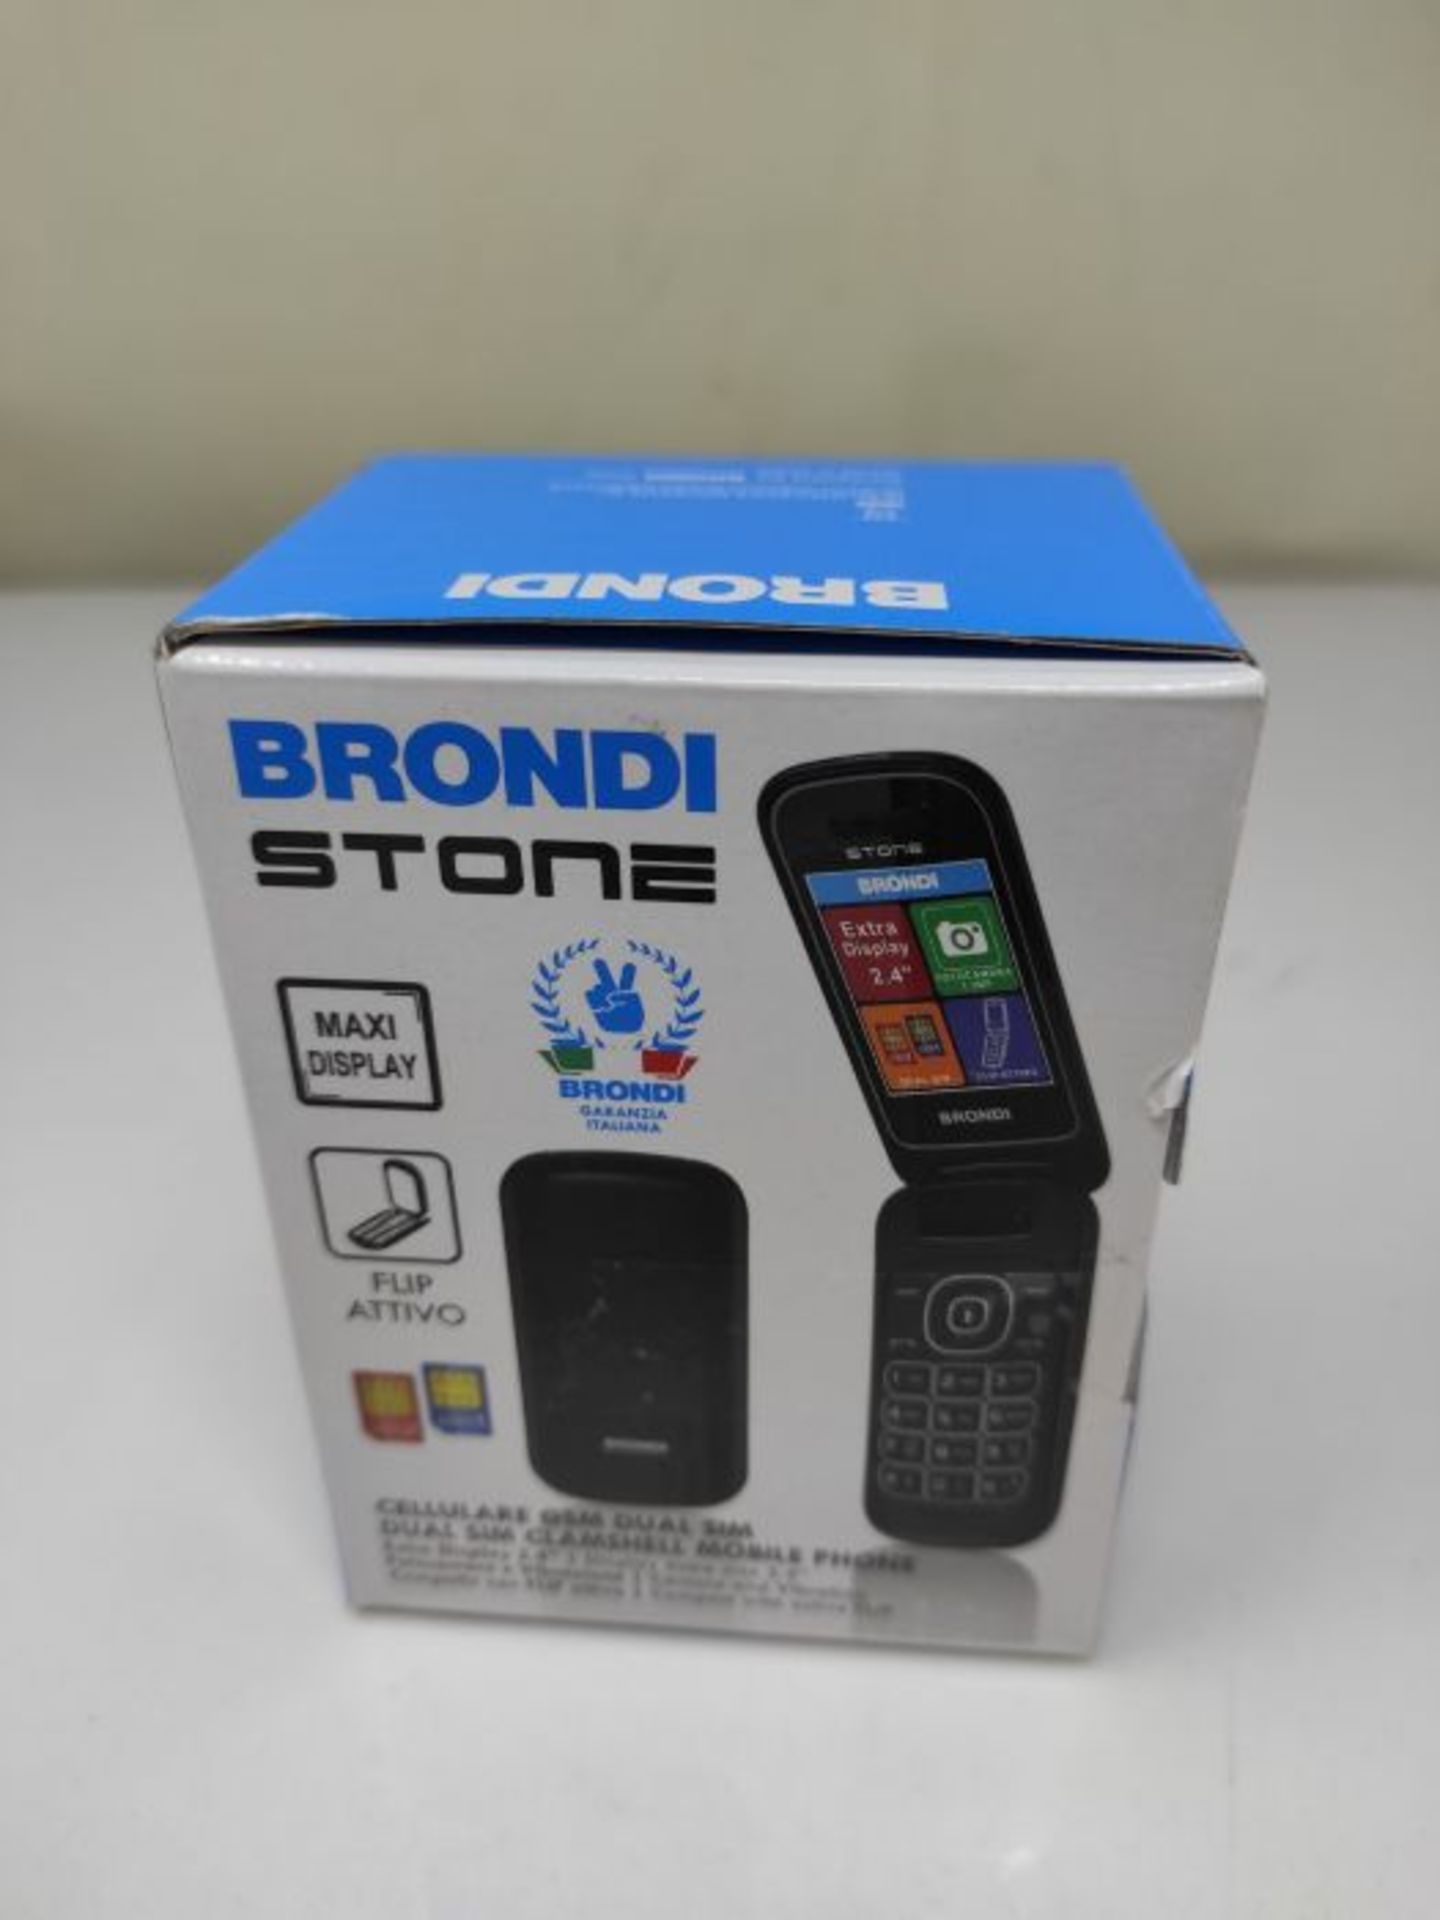 Brondi Stone - Cellulare con apertura a conchiglia, Dual Sim, 128x160 pixel, Display 2 - Image 2 of 3